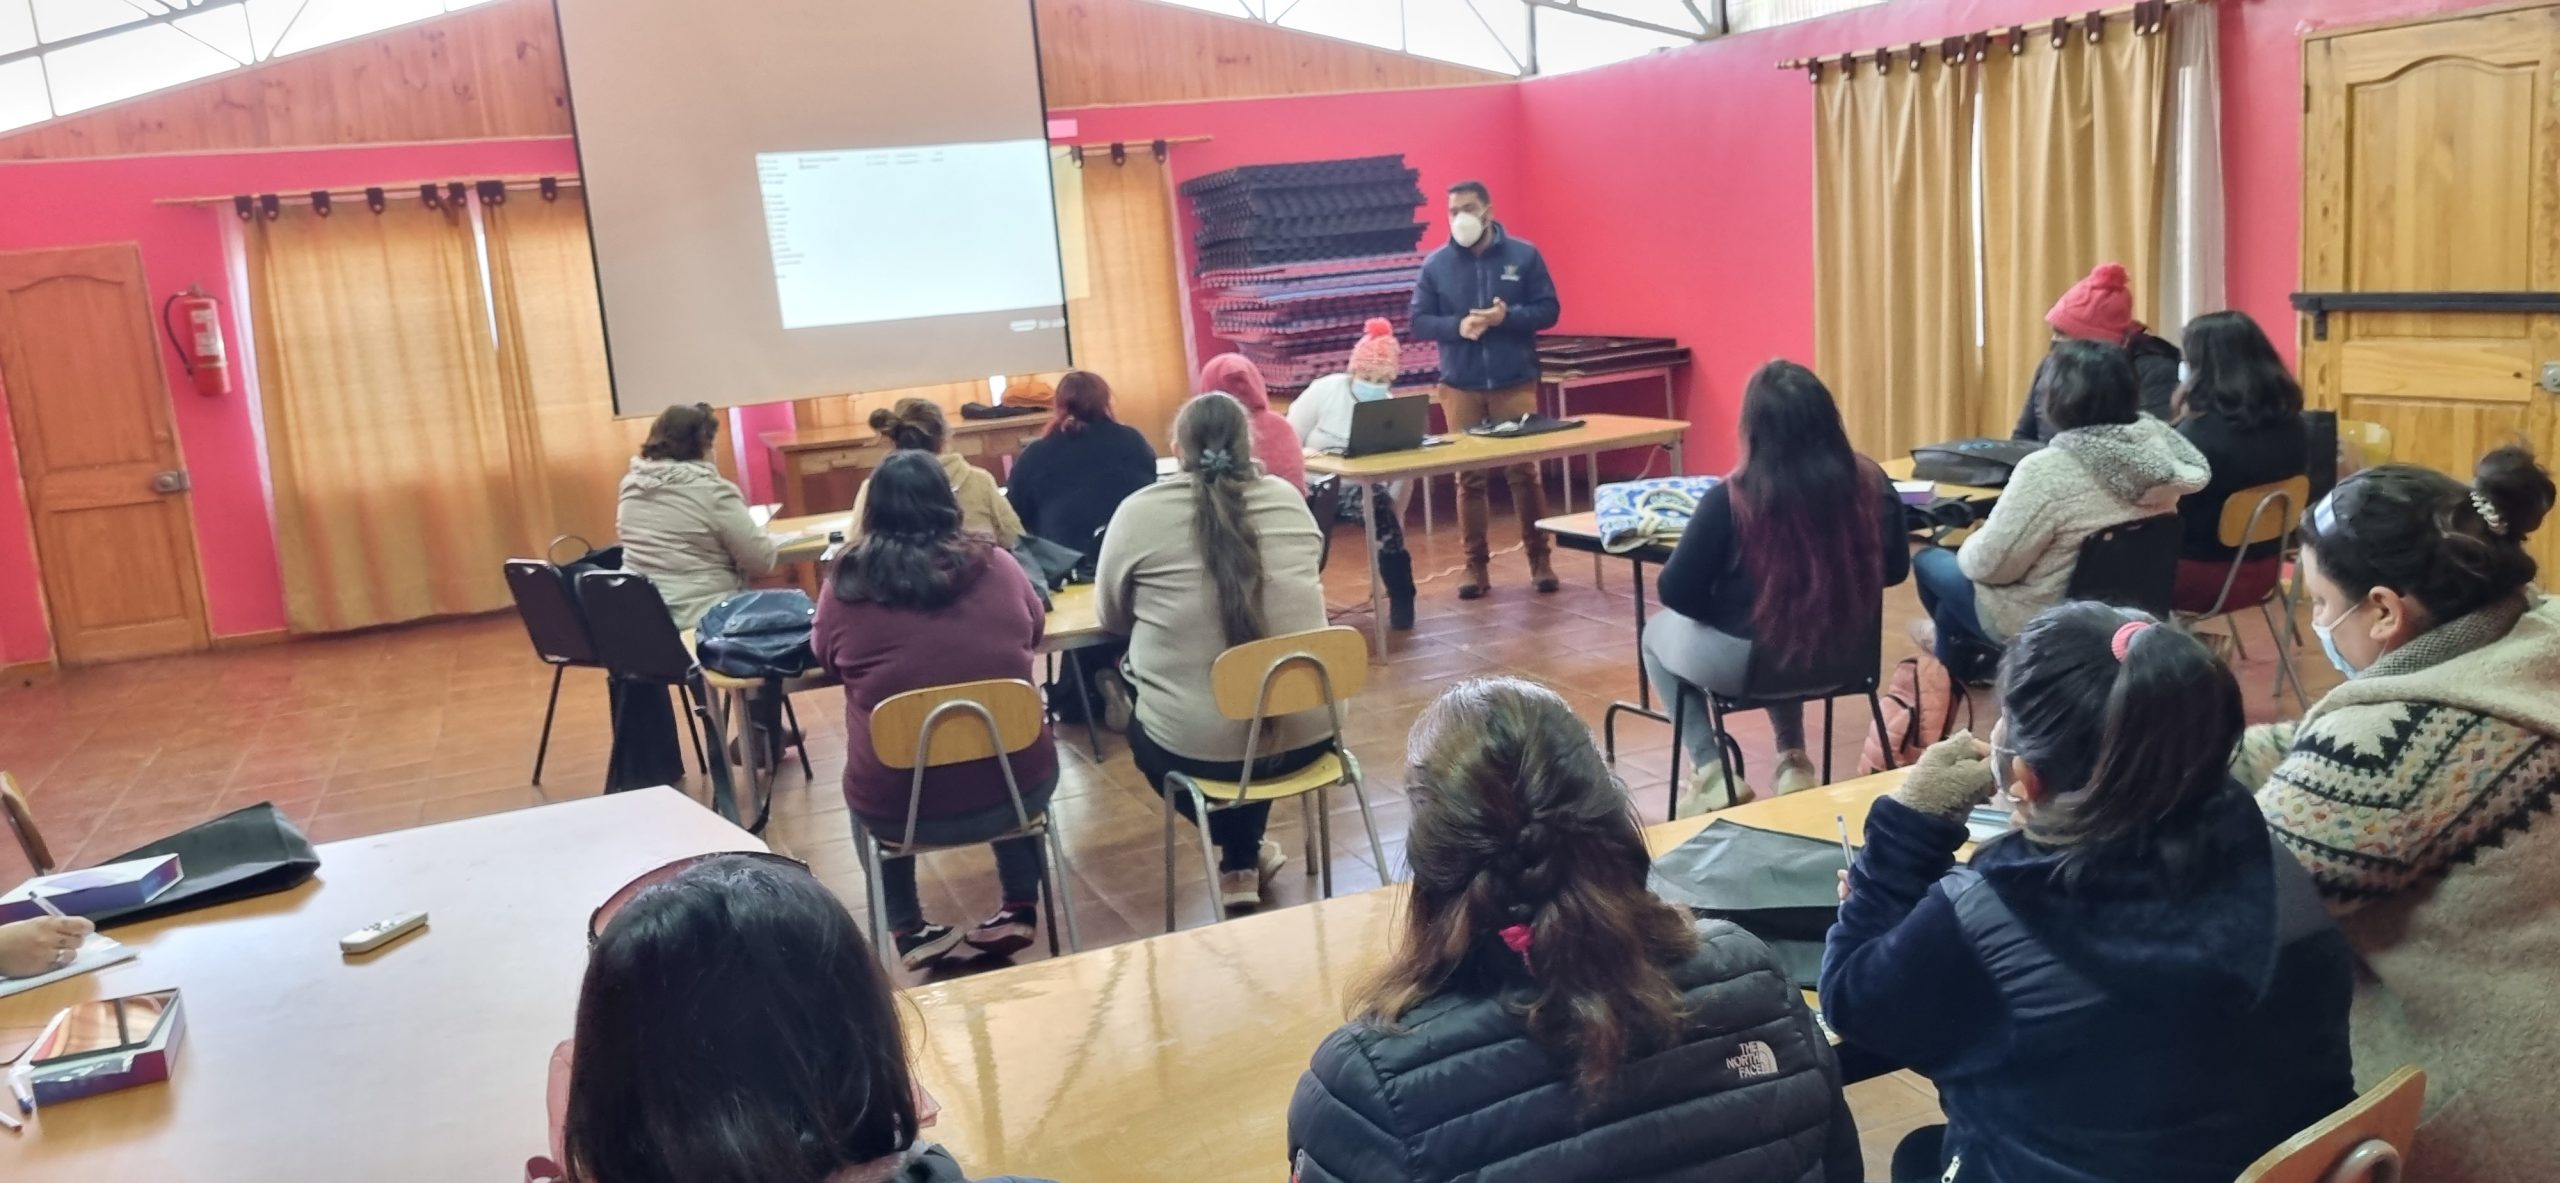 SAN ESTEBAN: 18 mujeres participan en taller de manipulación de alimentos gracias a coordinación de OMIL San Esteban